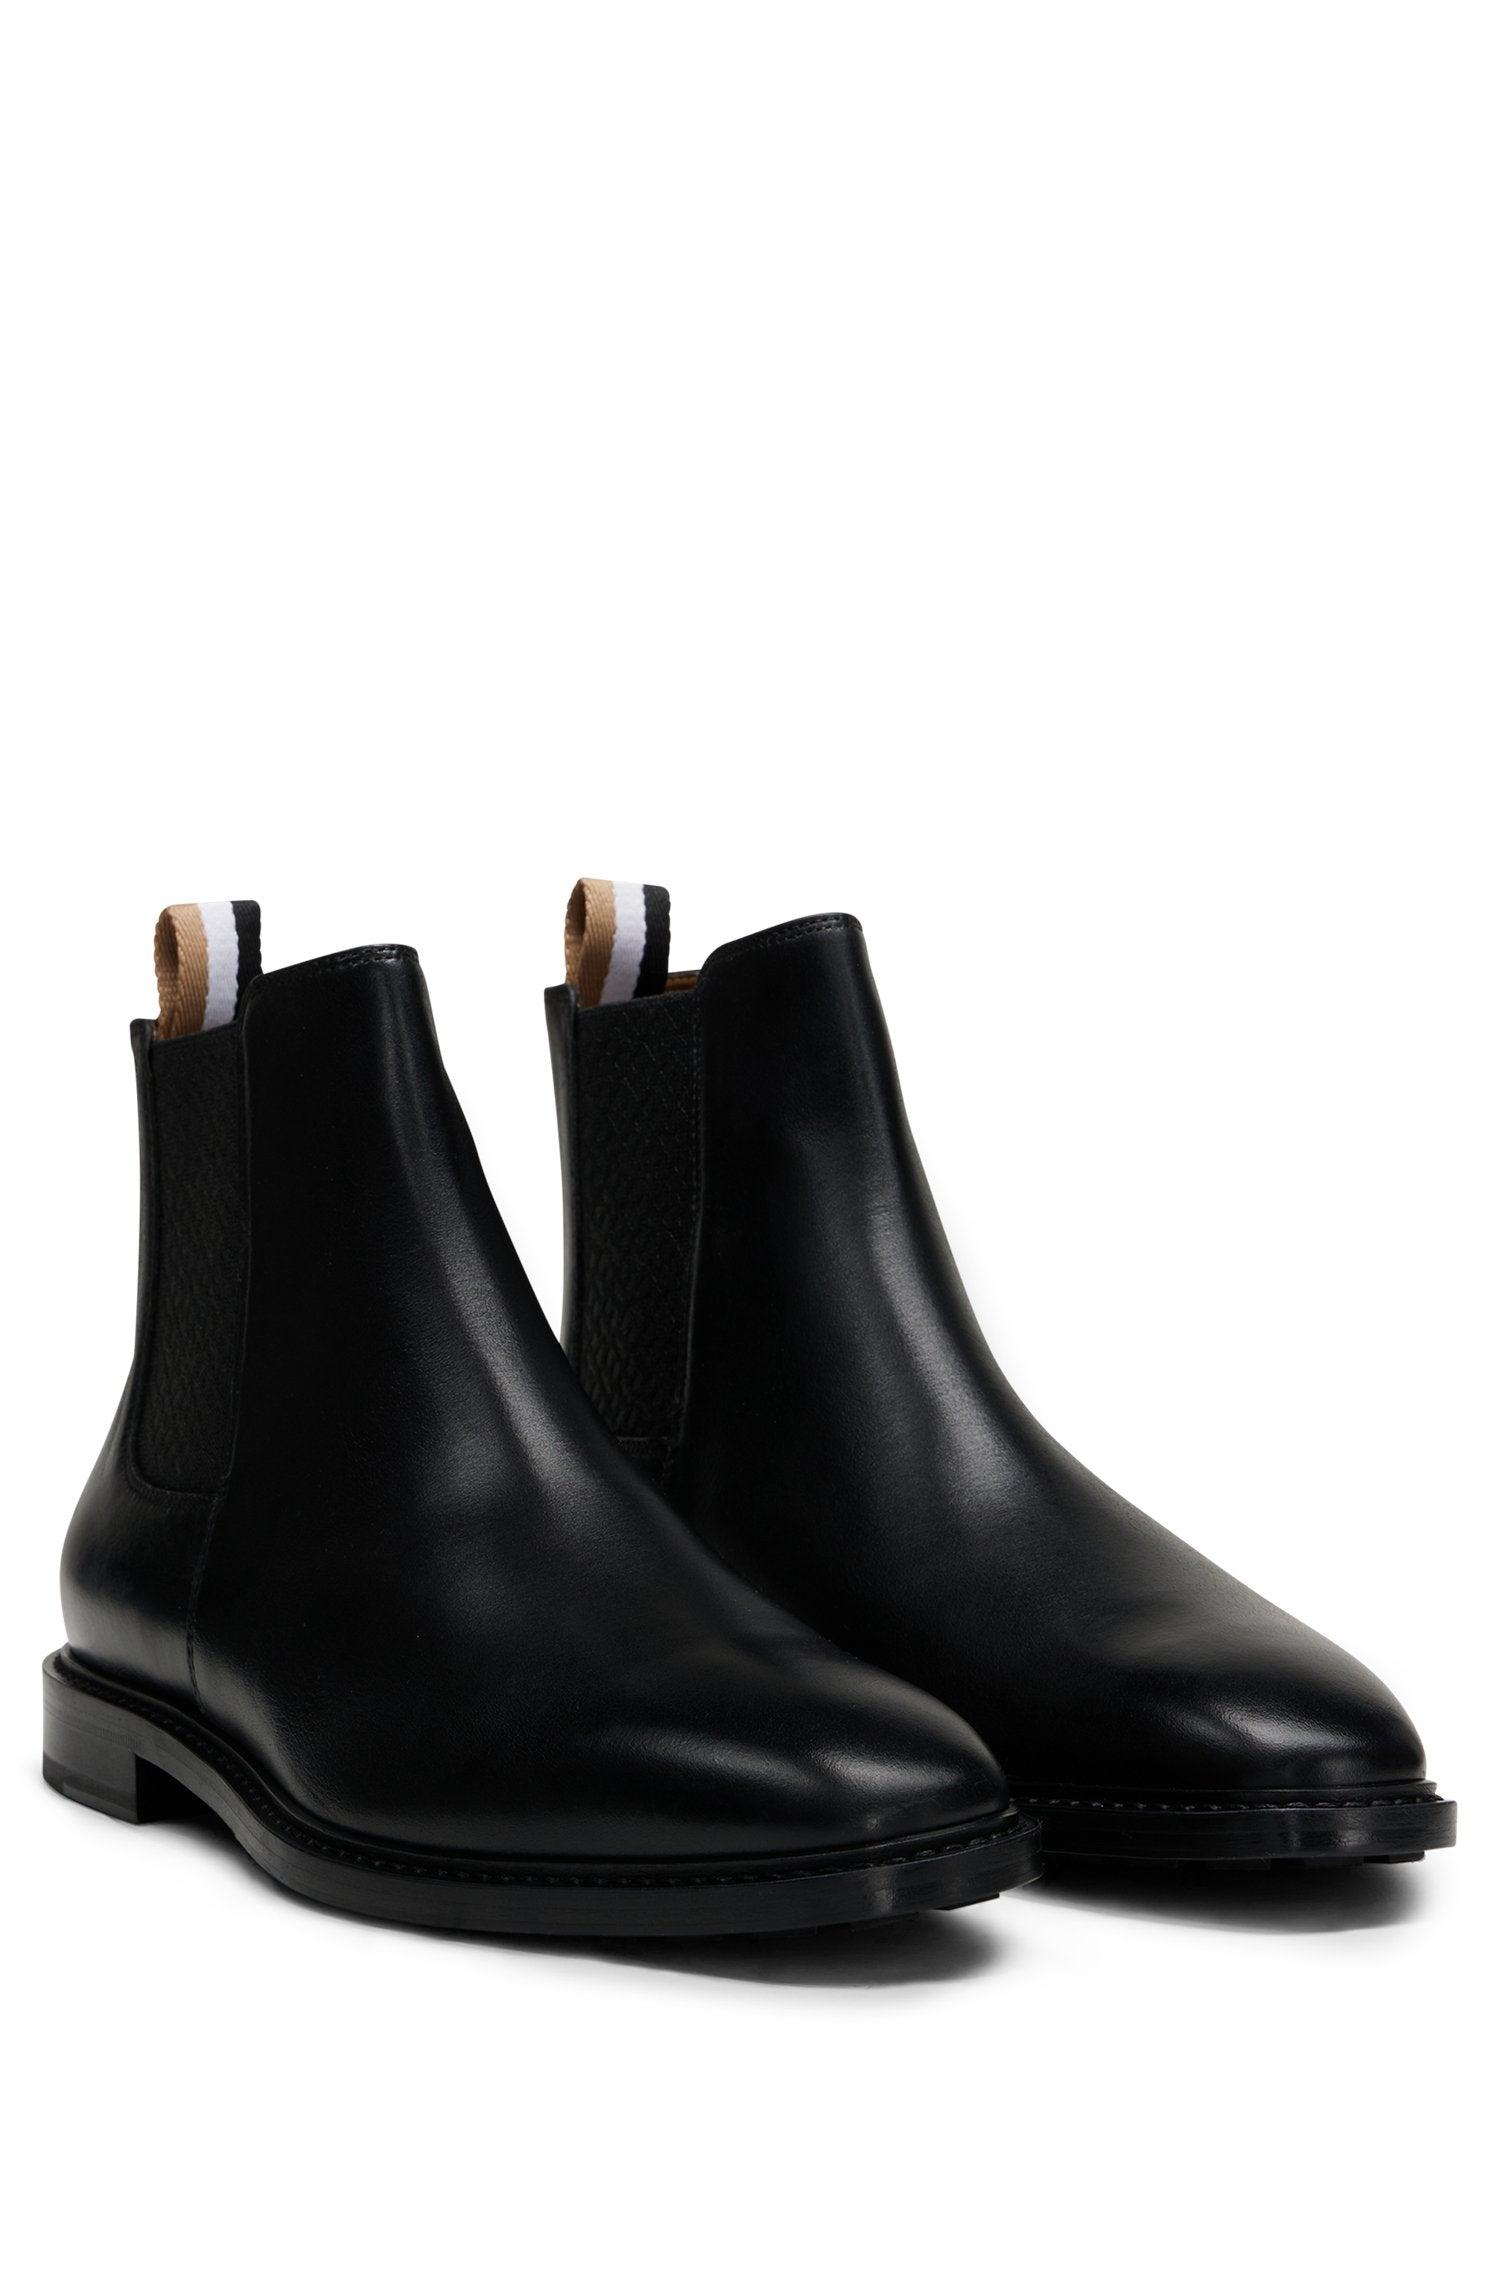 BOSS by HUGO BOSS Boss Leather Chelsea Boots Black for Men | Lyst